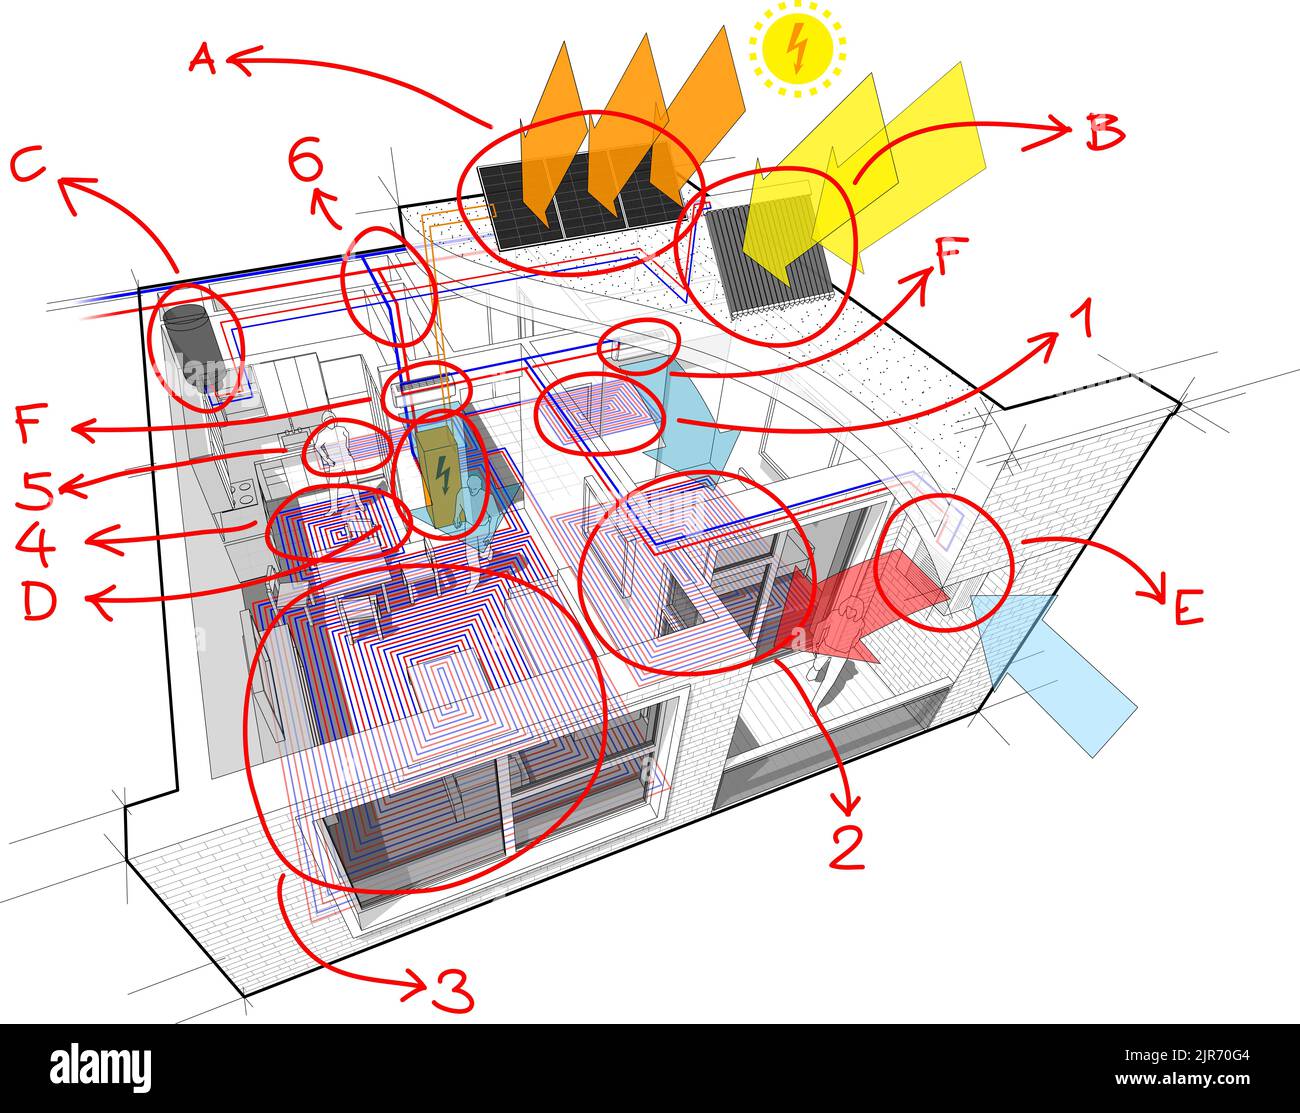 Schéma des appartements avec chauffage au sol, panneaux photovoltaïques et solaires, climatisation et notes dessinées à la main Banque D'Images